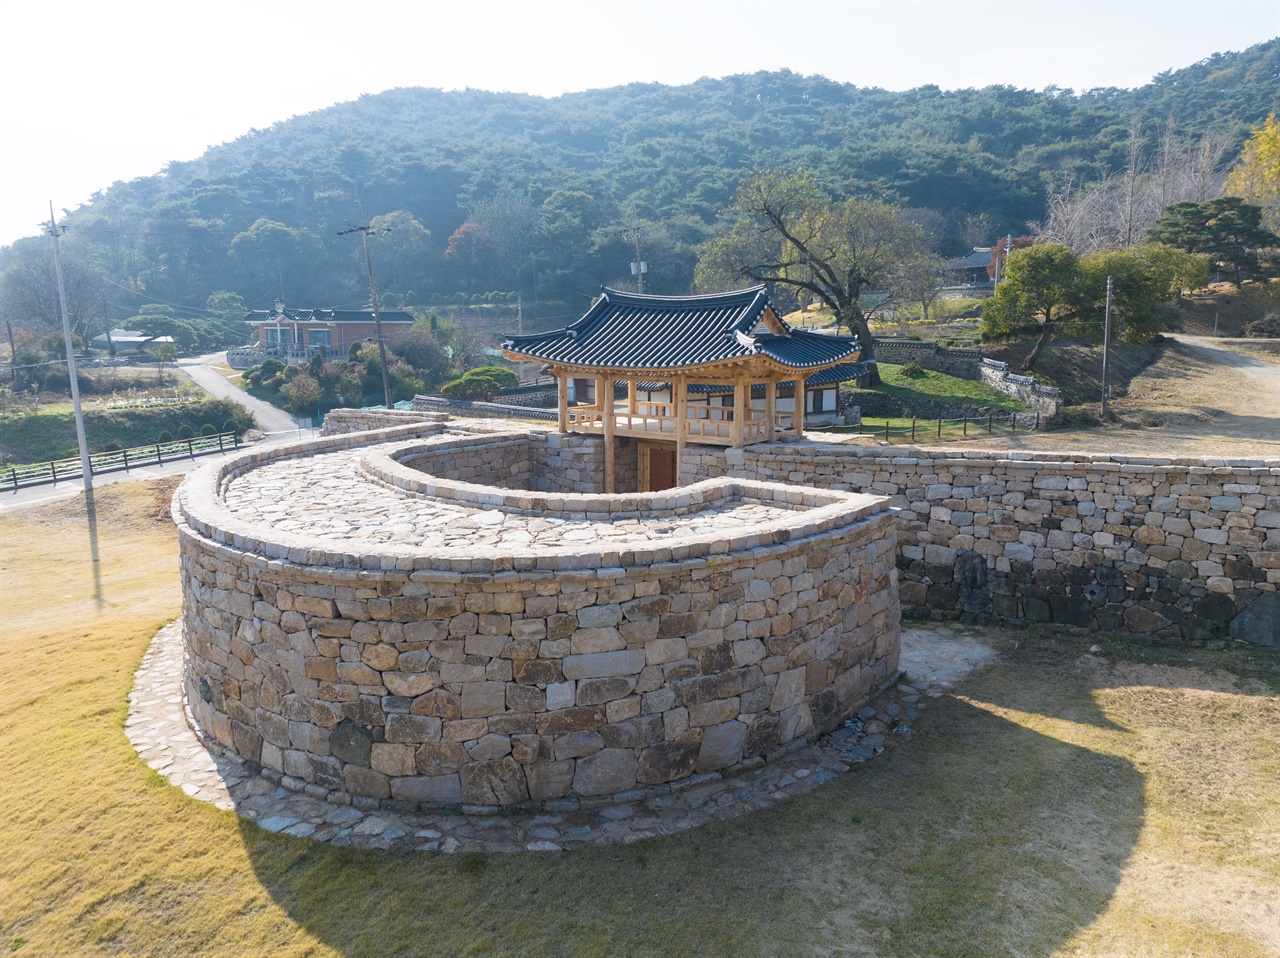 결성읍성 안내자료에 따르면 결성 읍성은 문종 1년(1451년) 완공된 조선시대 석축성으로, 석당산 능선을 따라 성벽을 축조했다. 사진은 복원된 동문 성곽과 옹성(둥근 부분)과 문루.